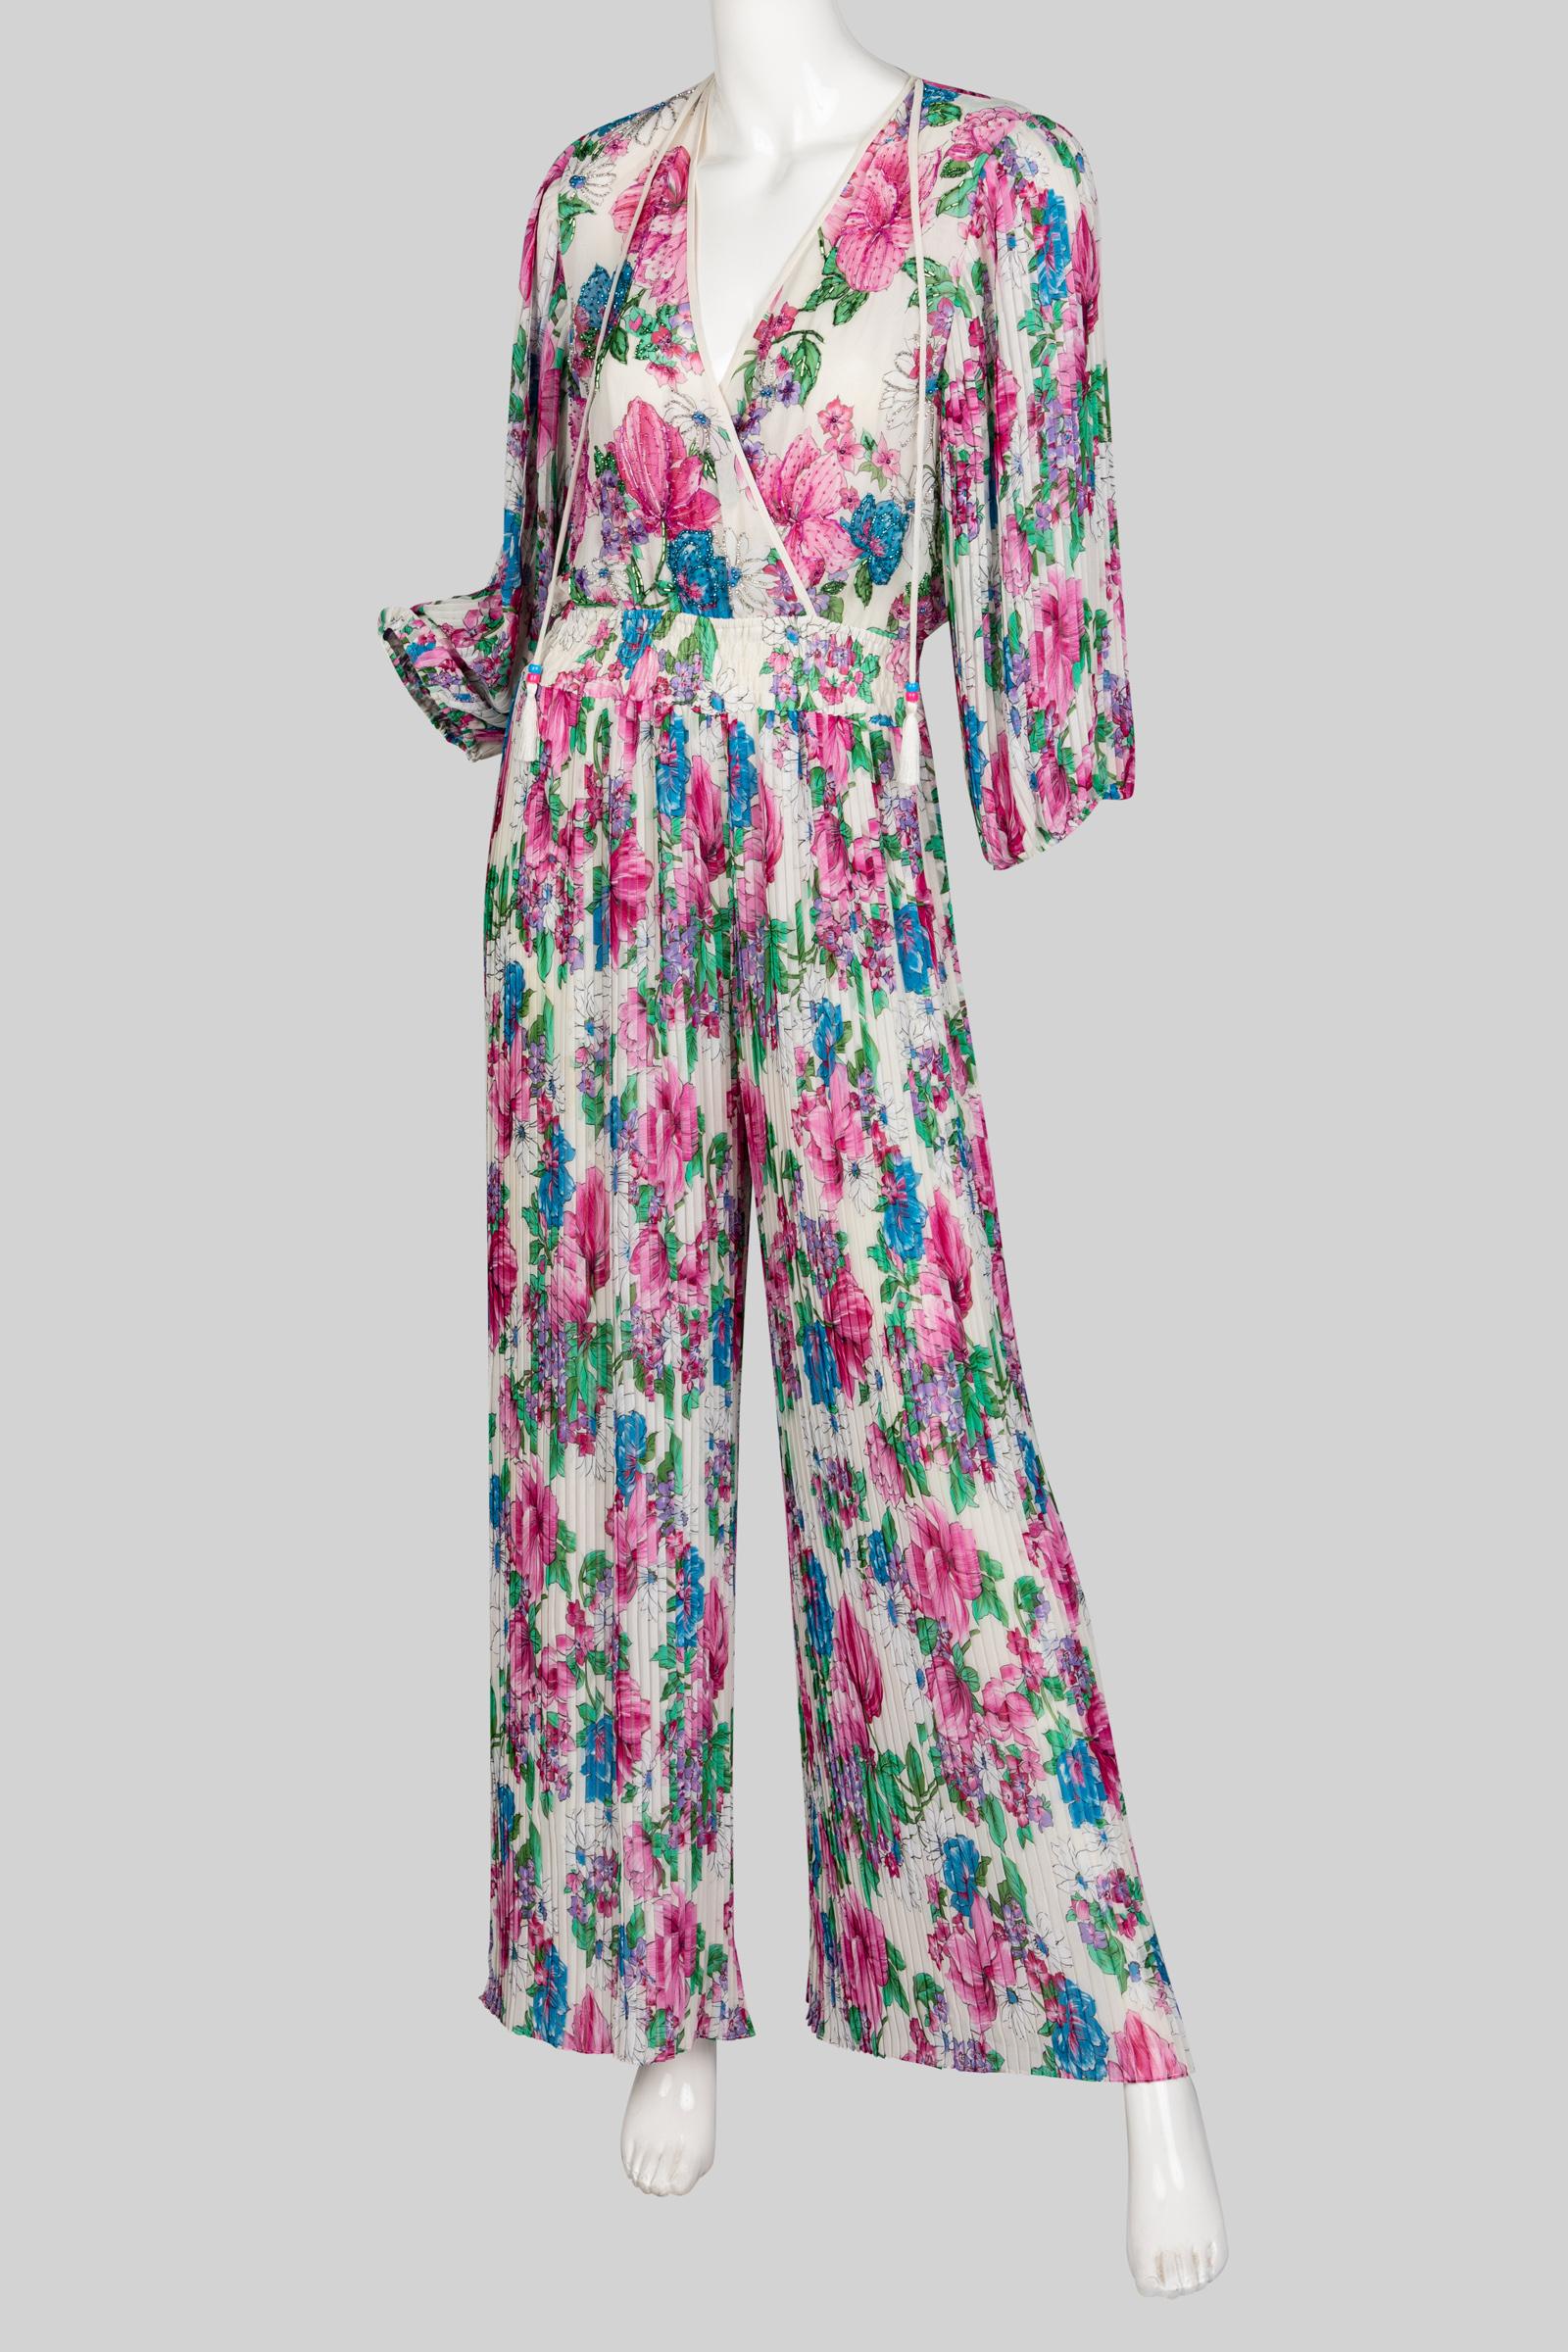 Women's  Diane Freis Floral Chiffon Jumpsuit, 1980s For Sale